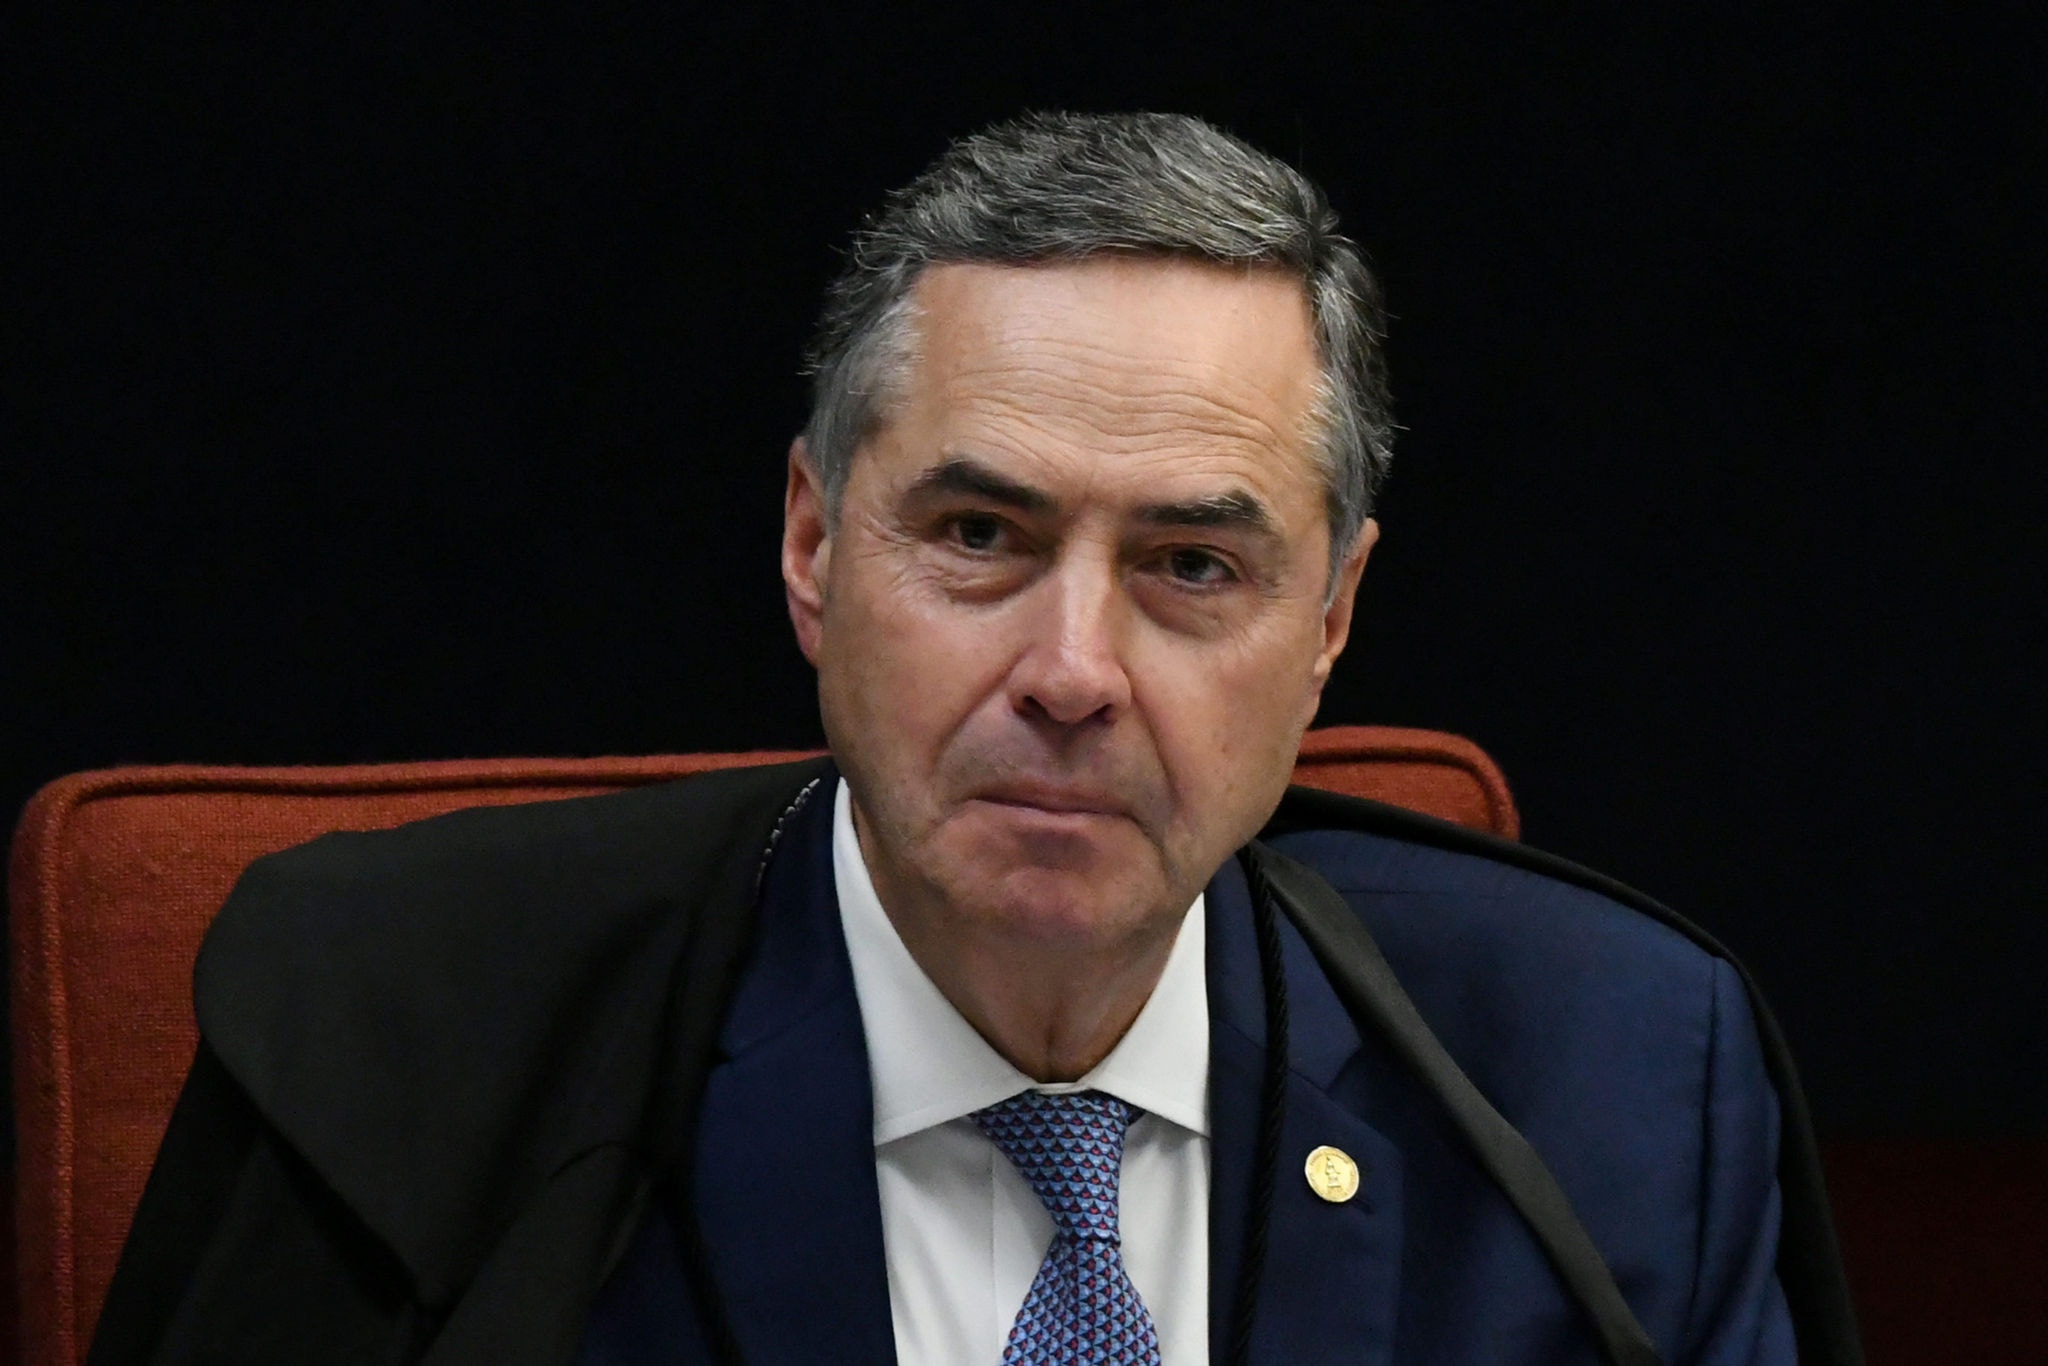 Ministro Luís Roberto Barroso, do STF, cancela depoimento de Paulo Guedes, ministro da Economia do governo Bolsonaro, em investigação envolvendo o senador Renan Calheiros